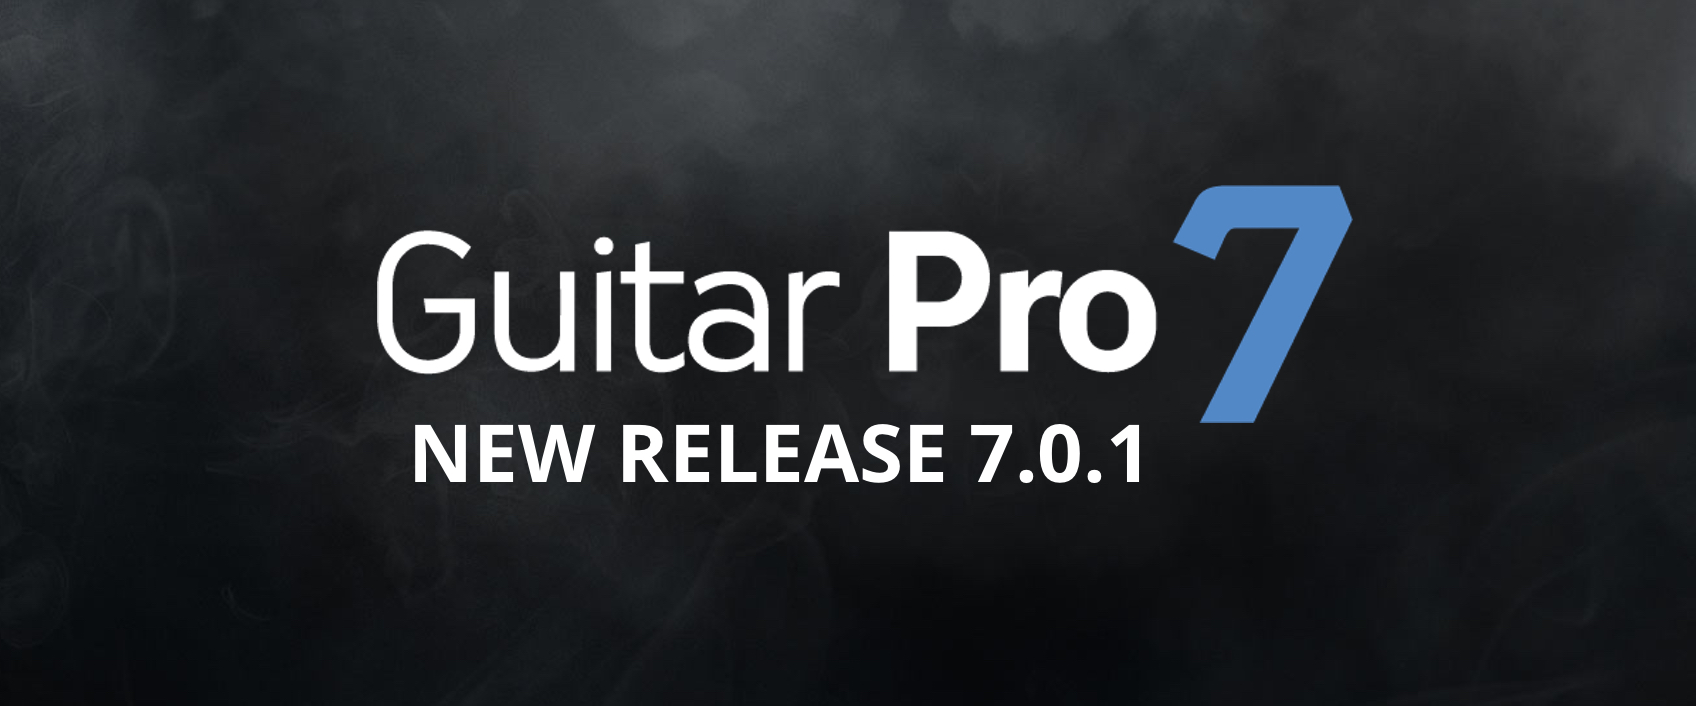 guitar pro 7 update download